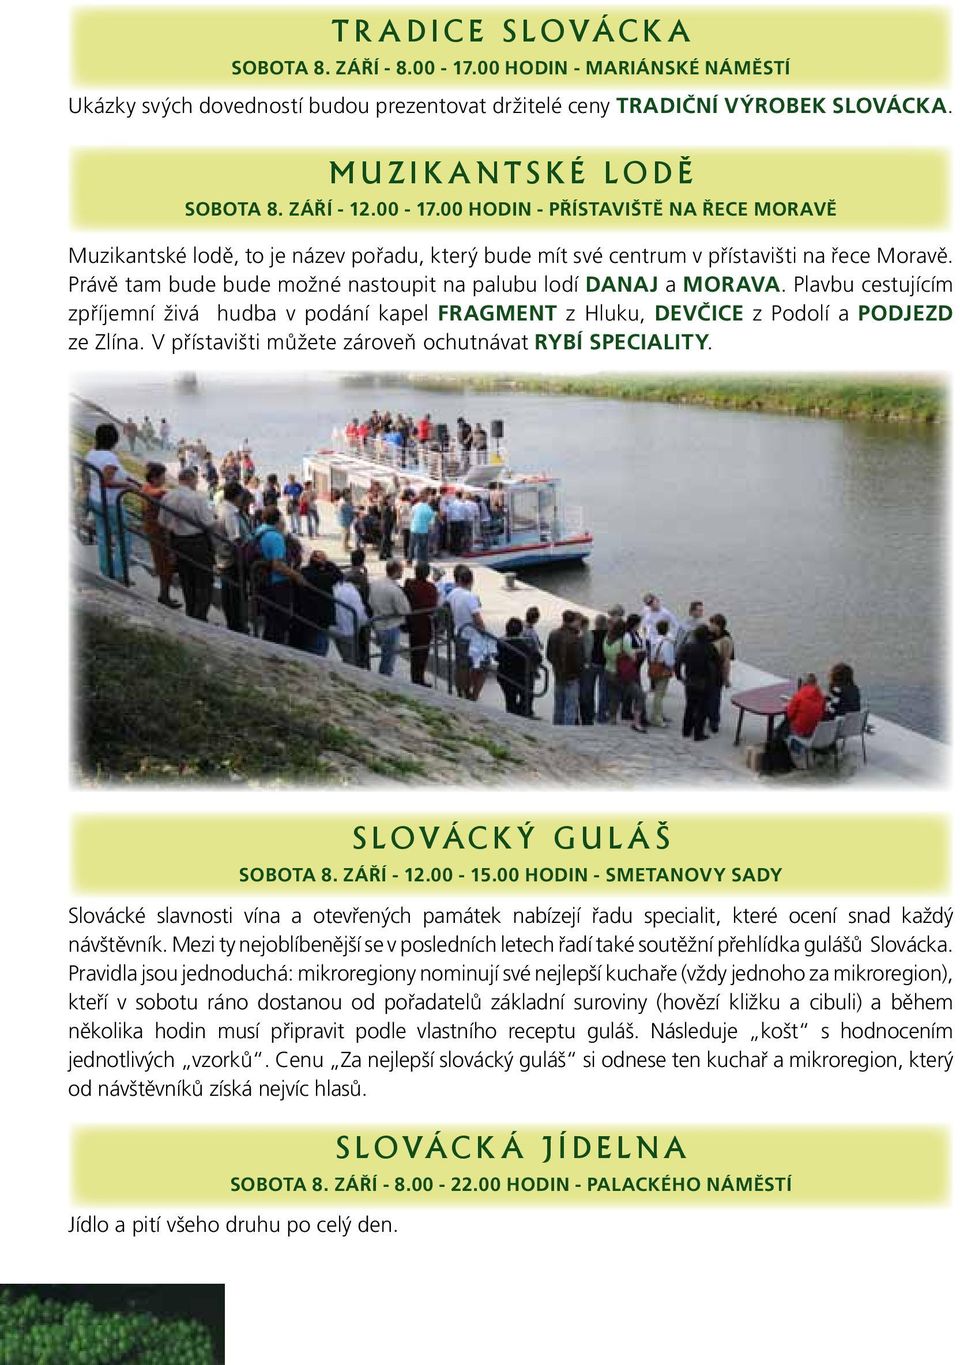 V přístavišti můžete zároveň ochutnávat rybí speciality. slovácký guláš sobota 8. září - 12.00-15.